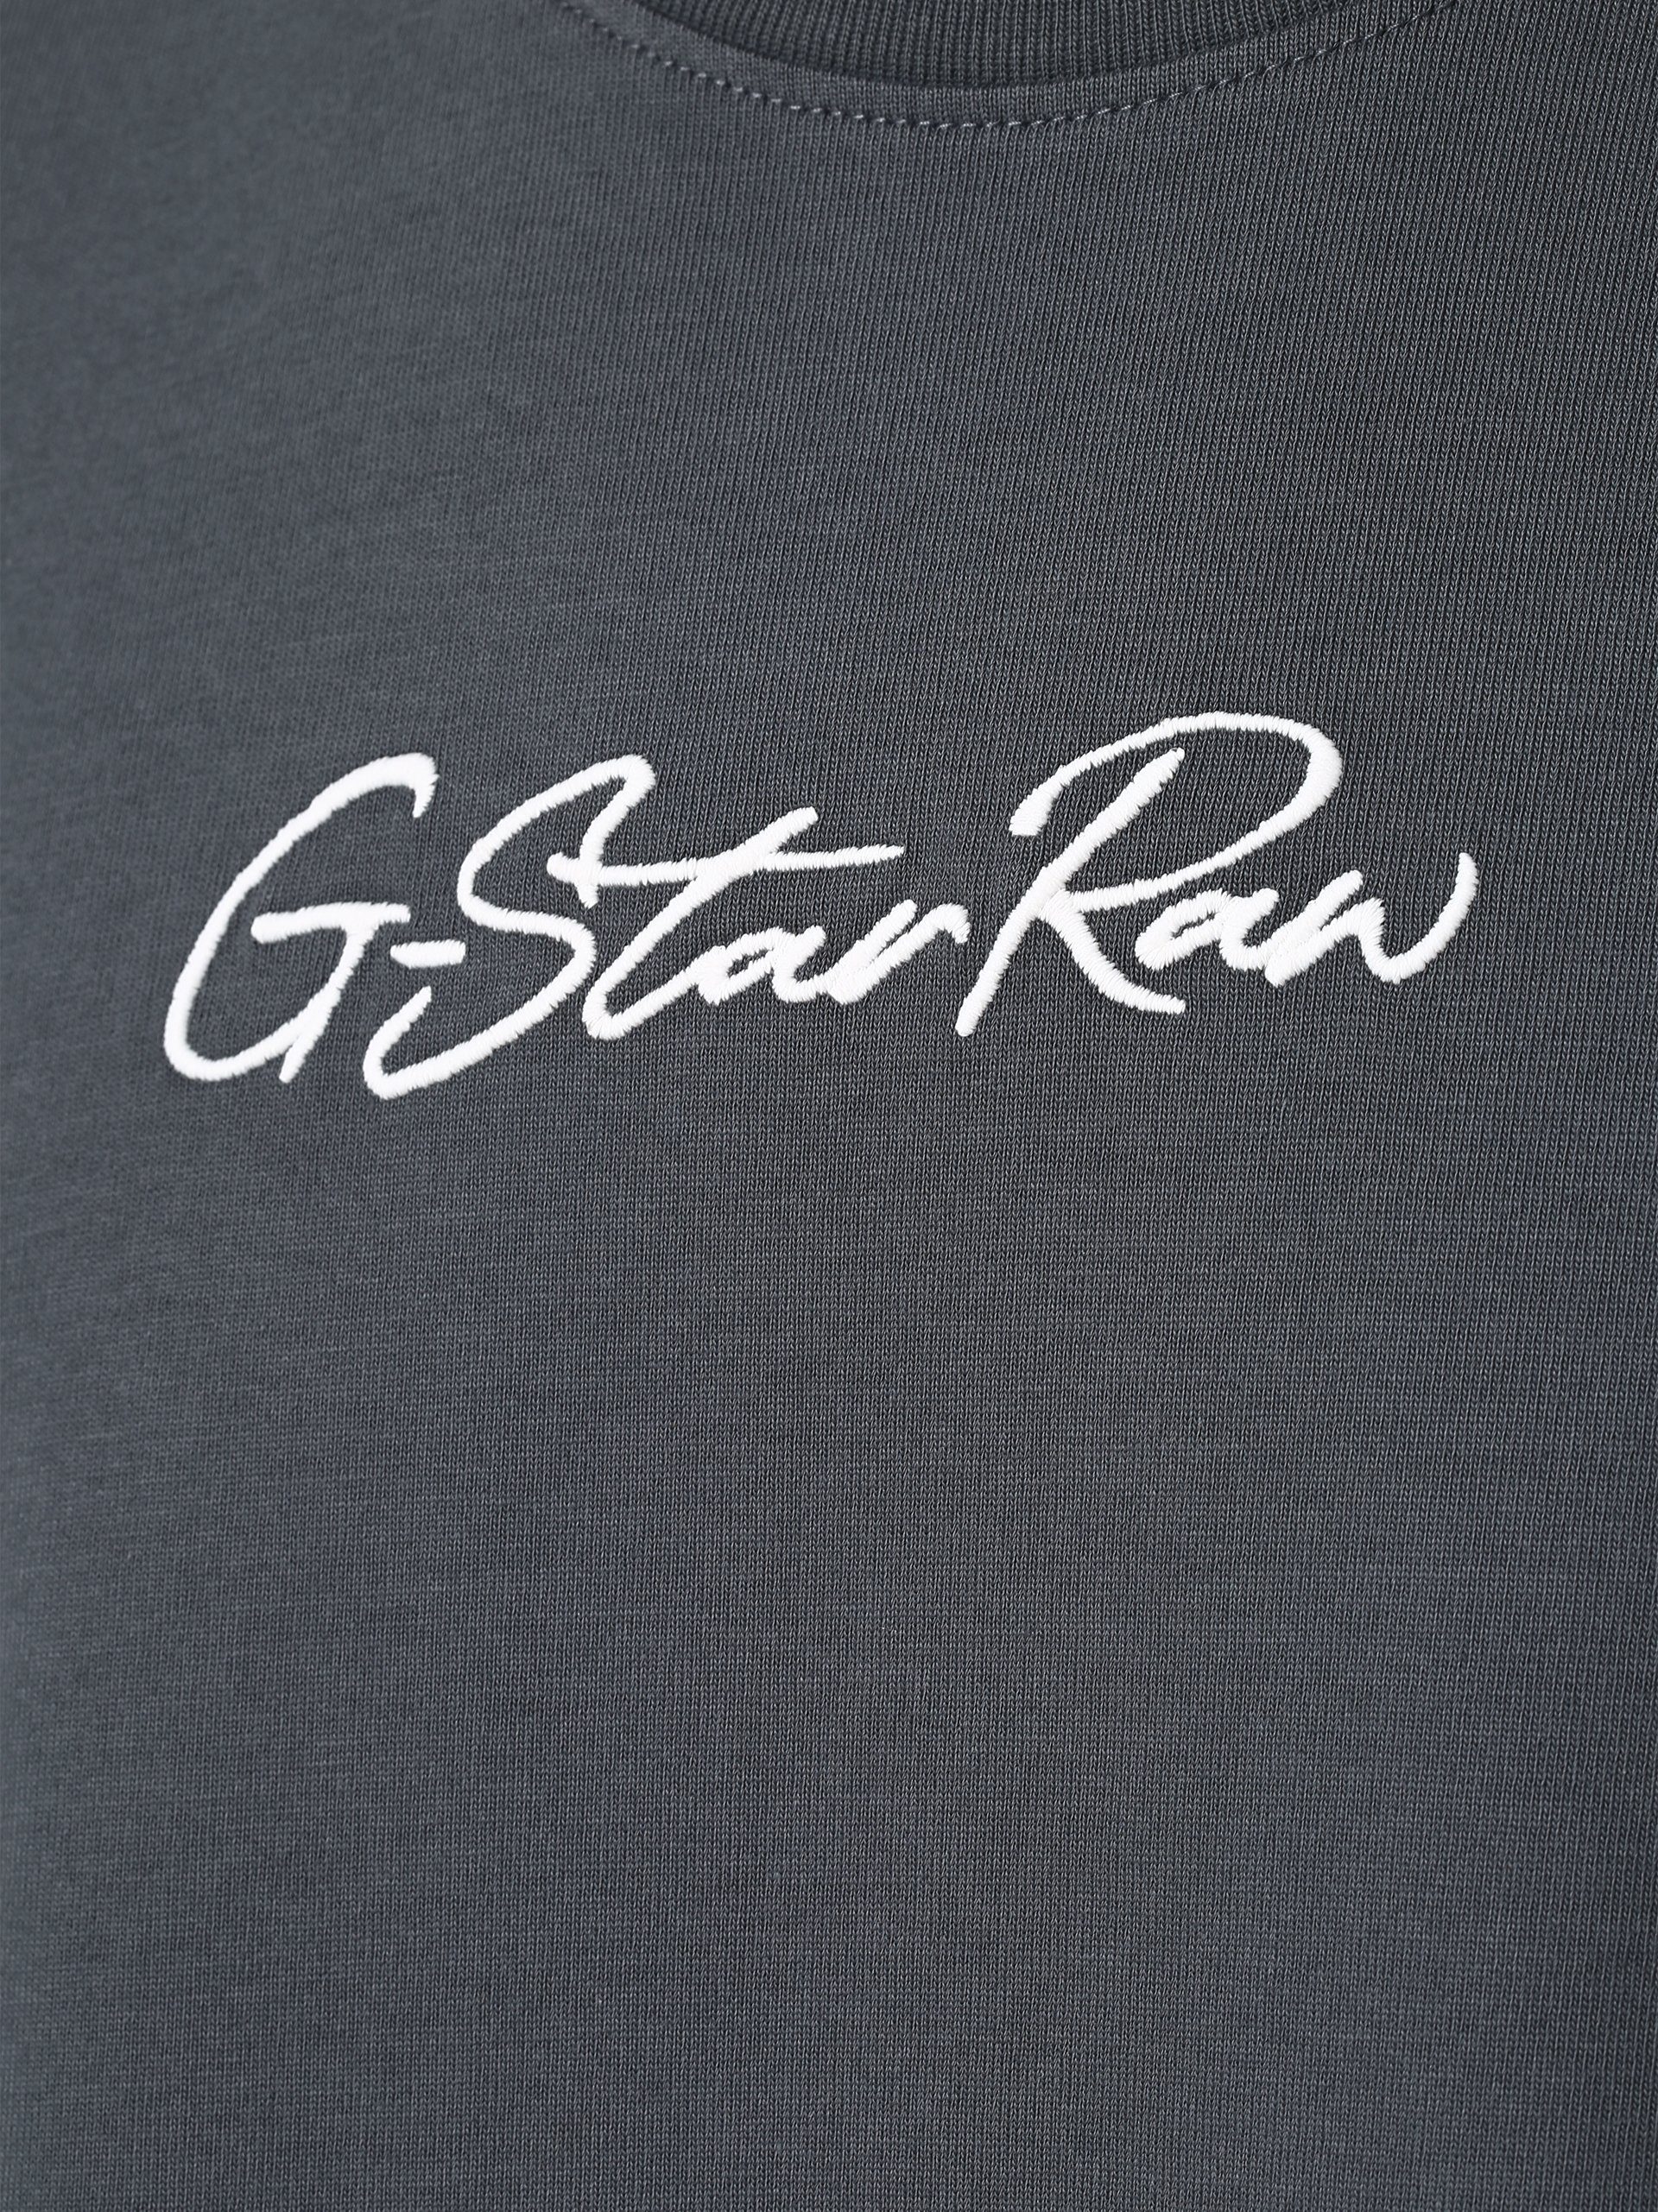 G-Star RAW T-Shirt Autograph